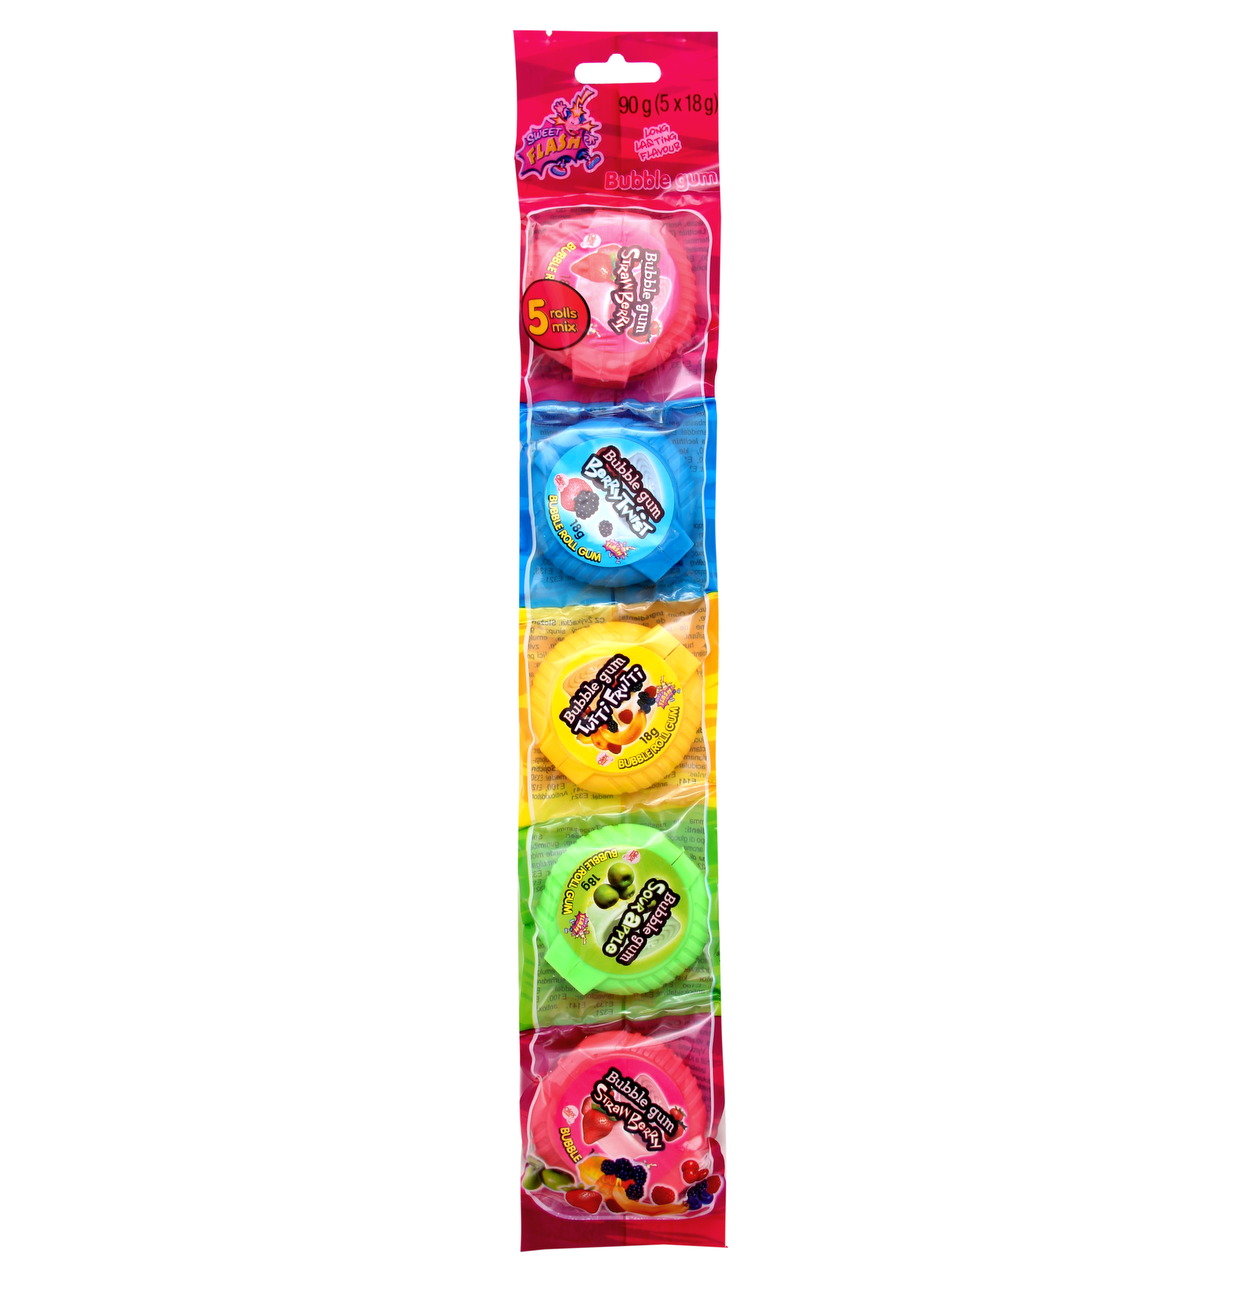 Bubble gum Rolls 5-pack (30 x 90g)